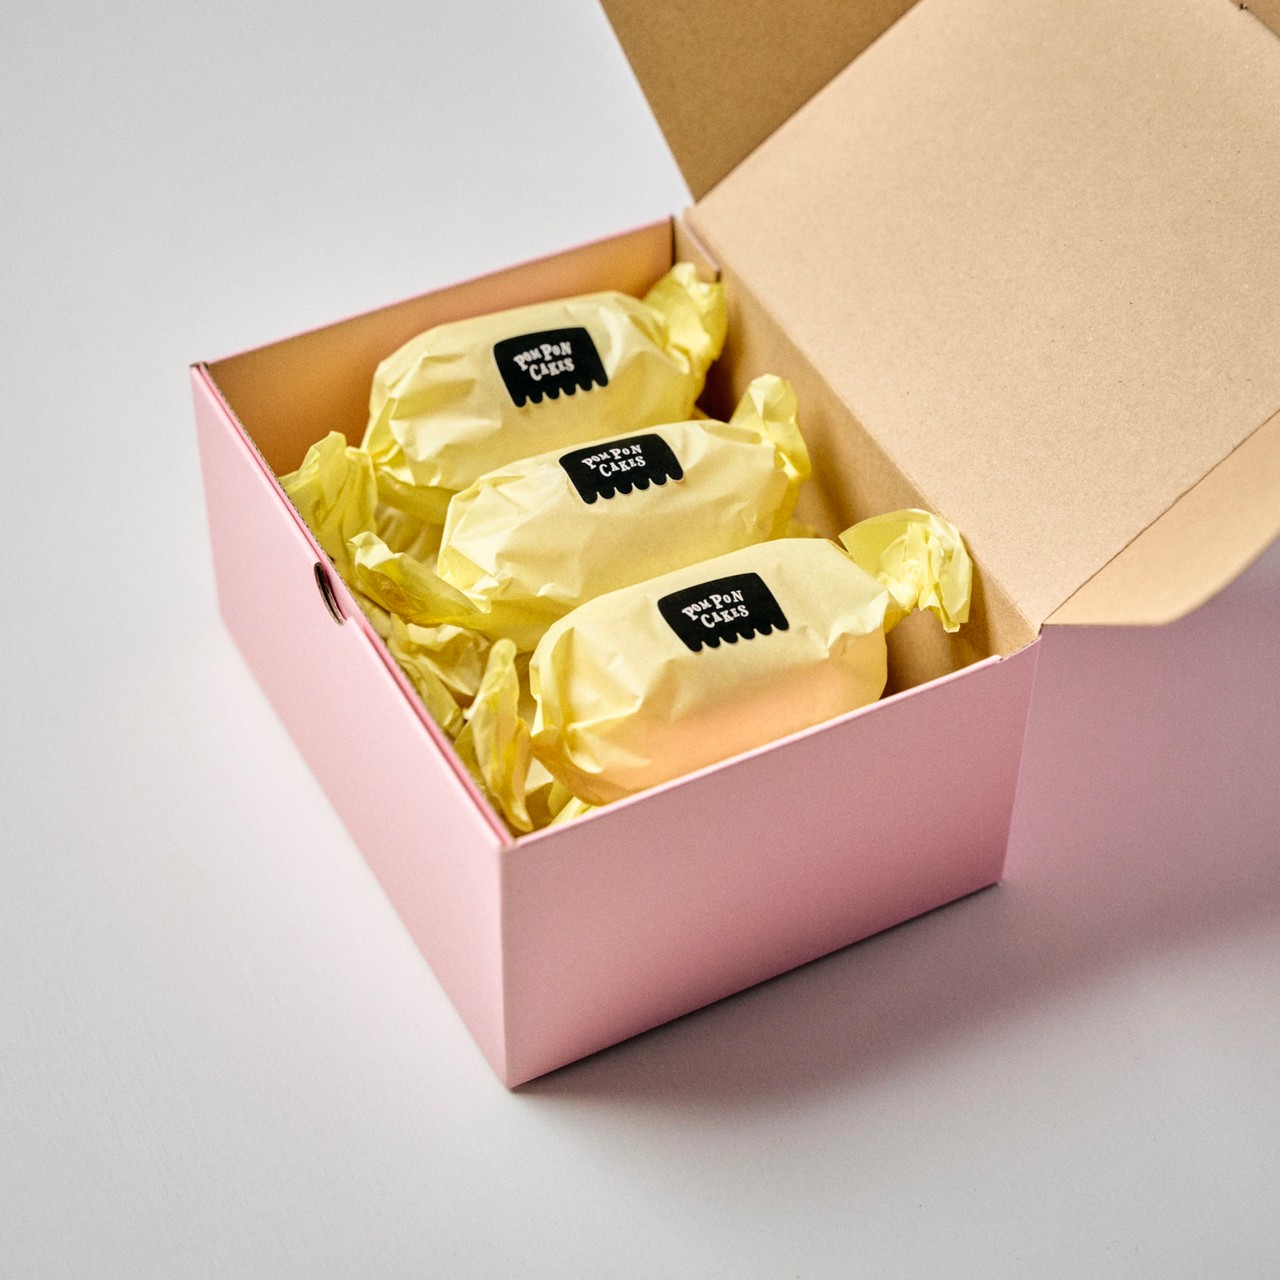 POMPONCAKESのレモンケーキ7個入りBOXがピンク色になりました（2021.12.13）